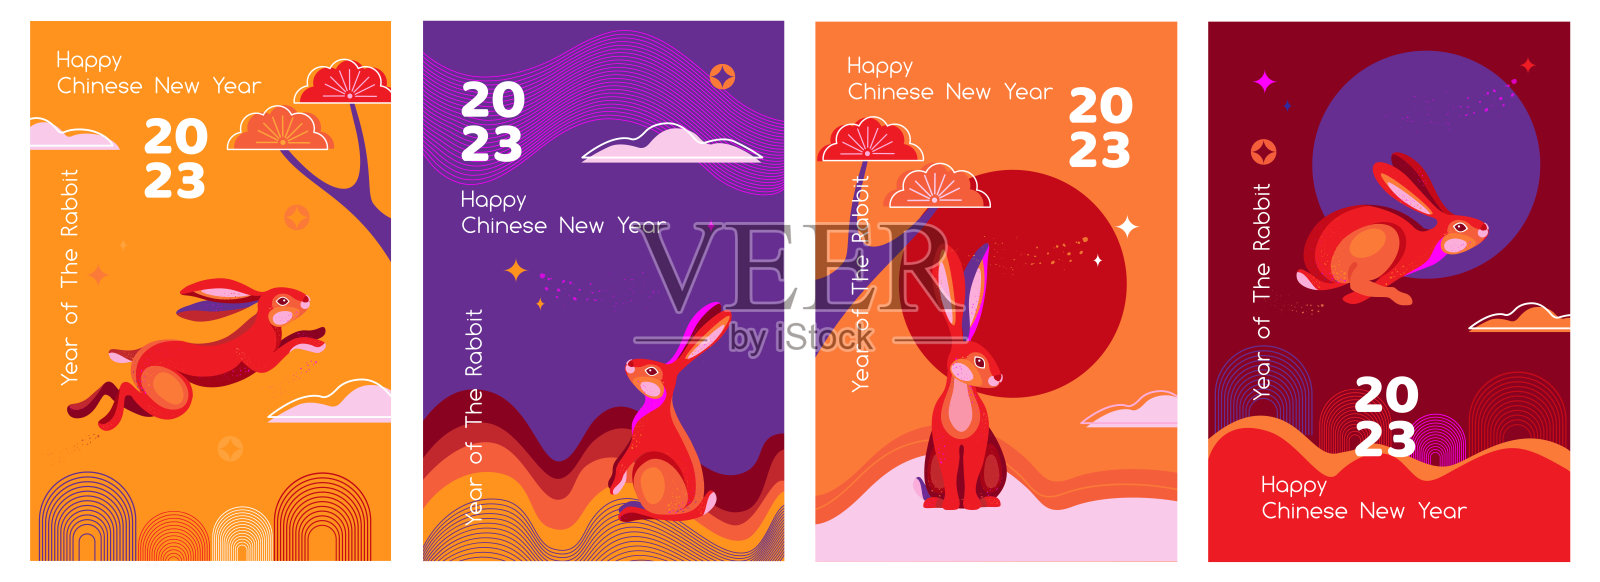 2023年中国新年快乐的抽象背景设置与兔子设计模板素材